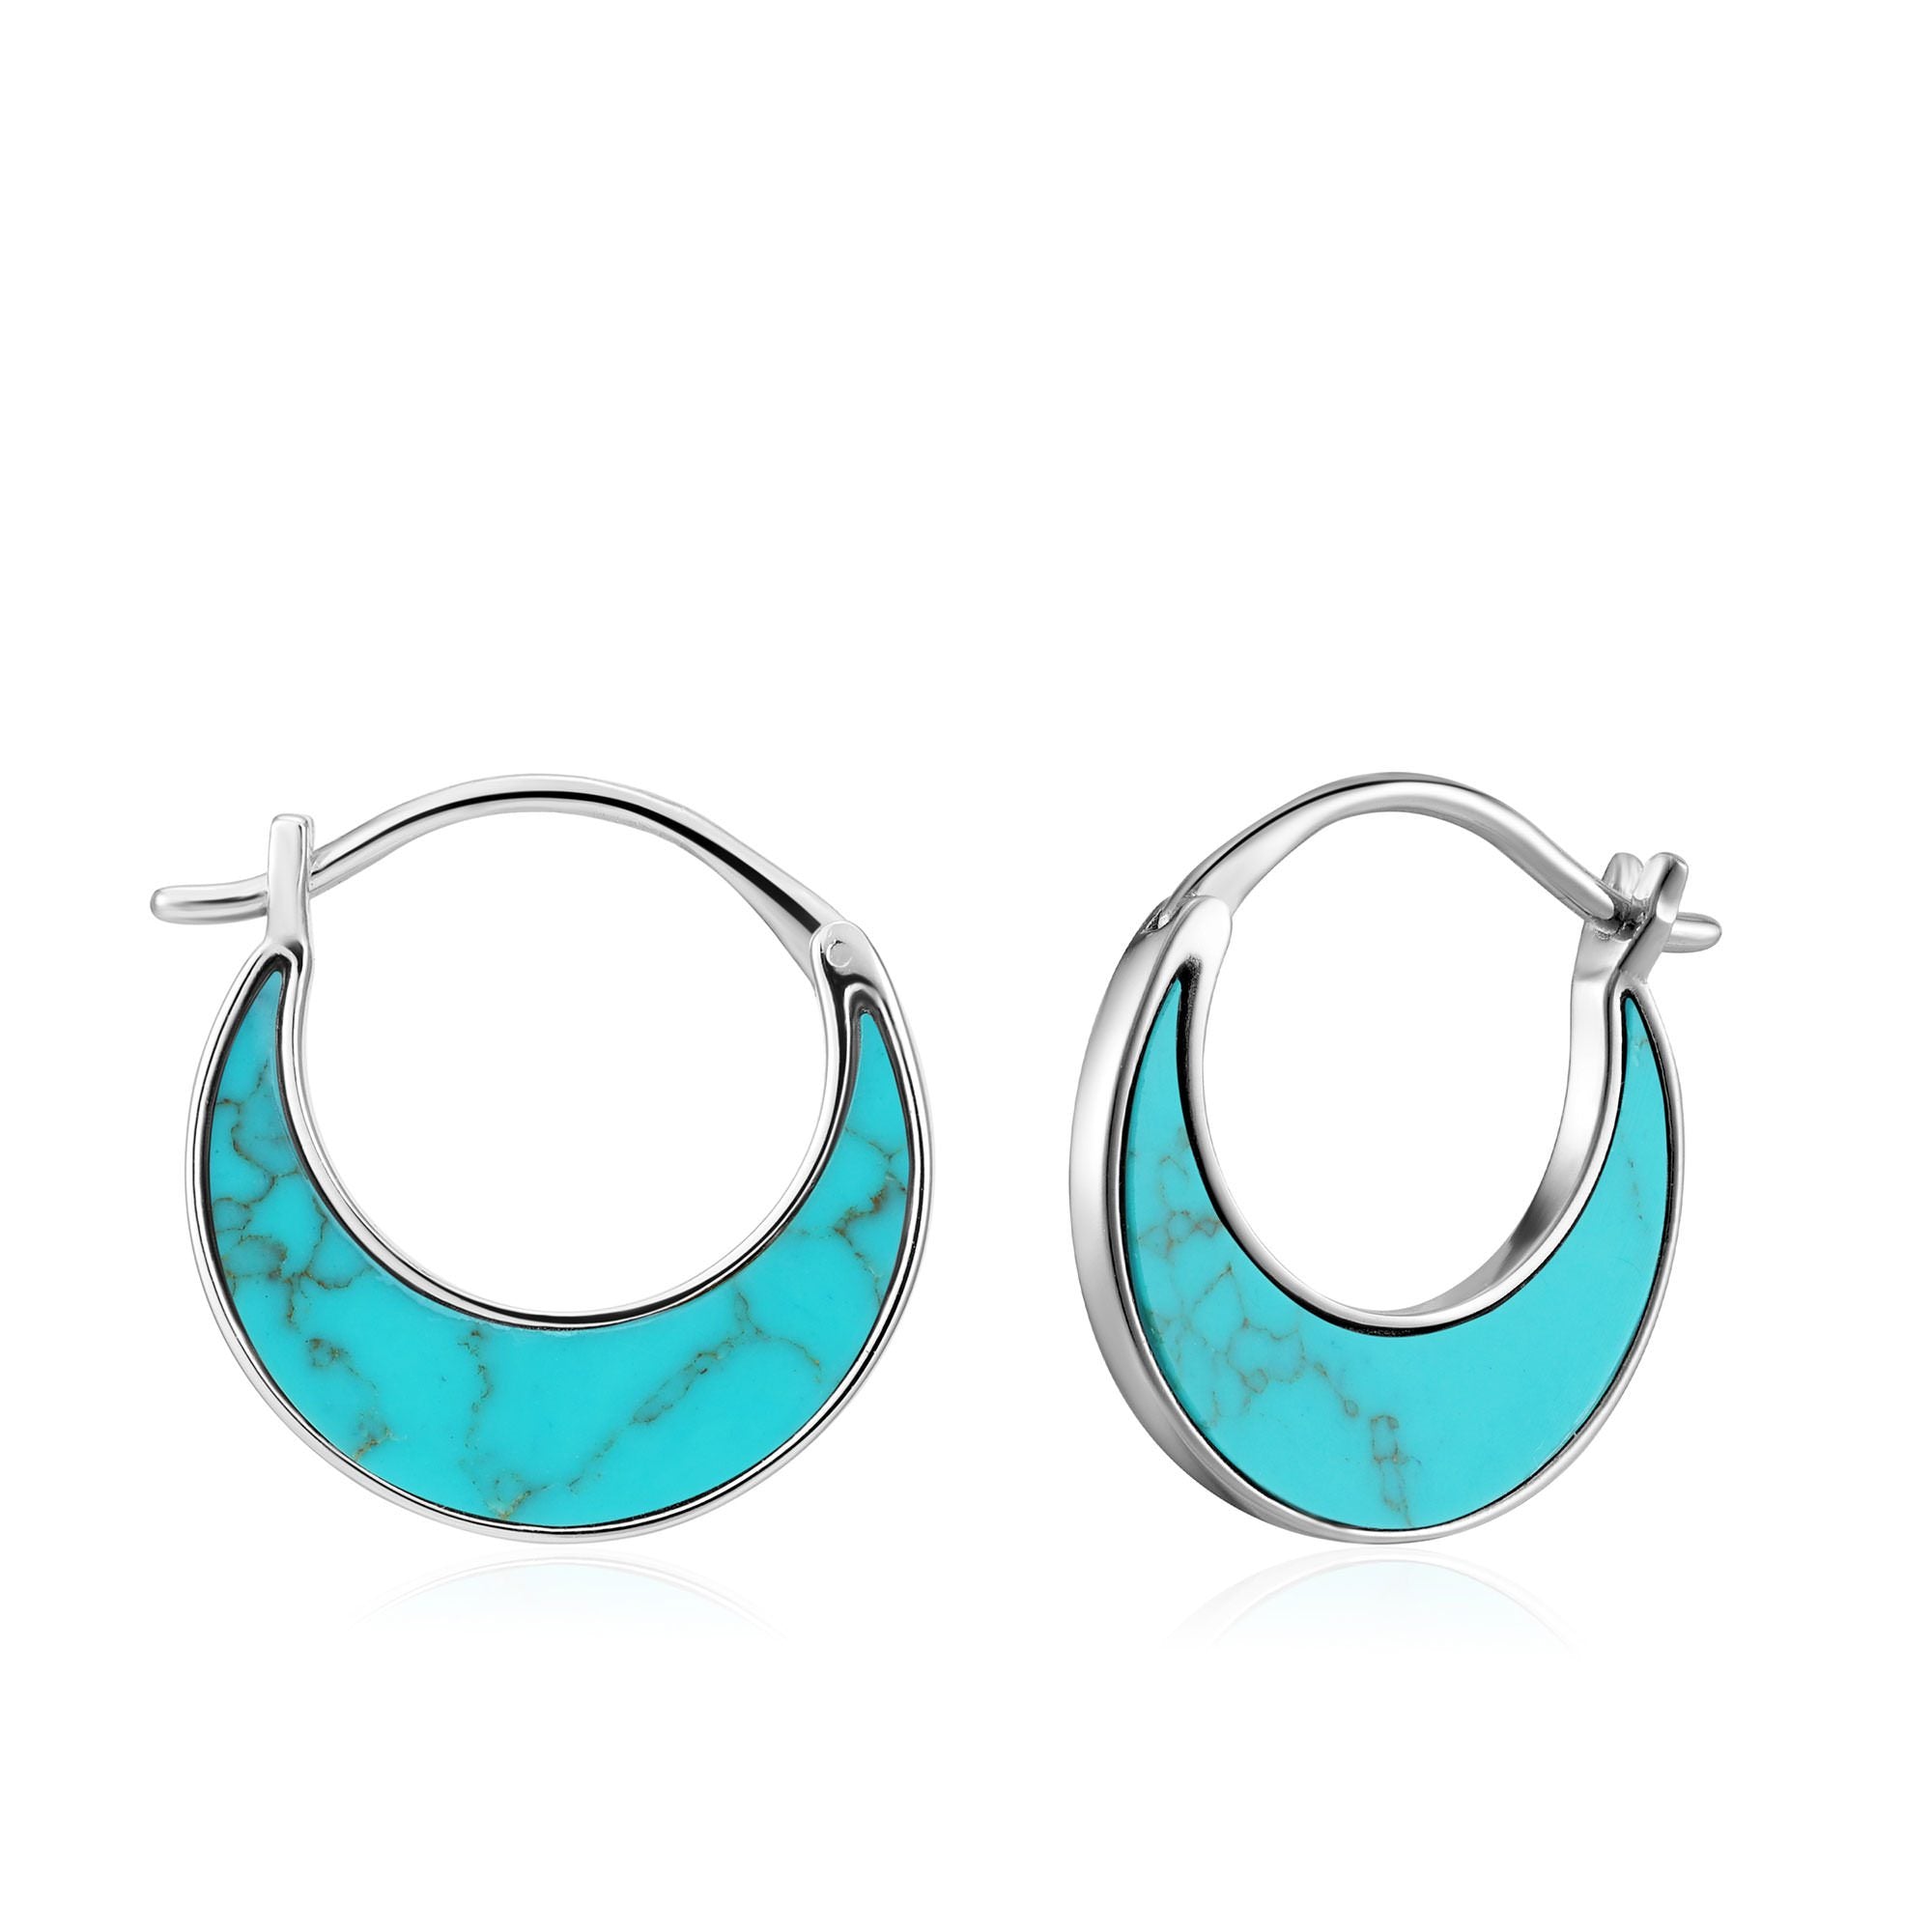 Ania Haie Turquoise Earrings